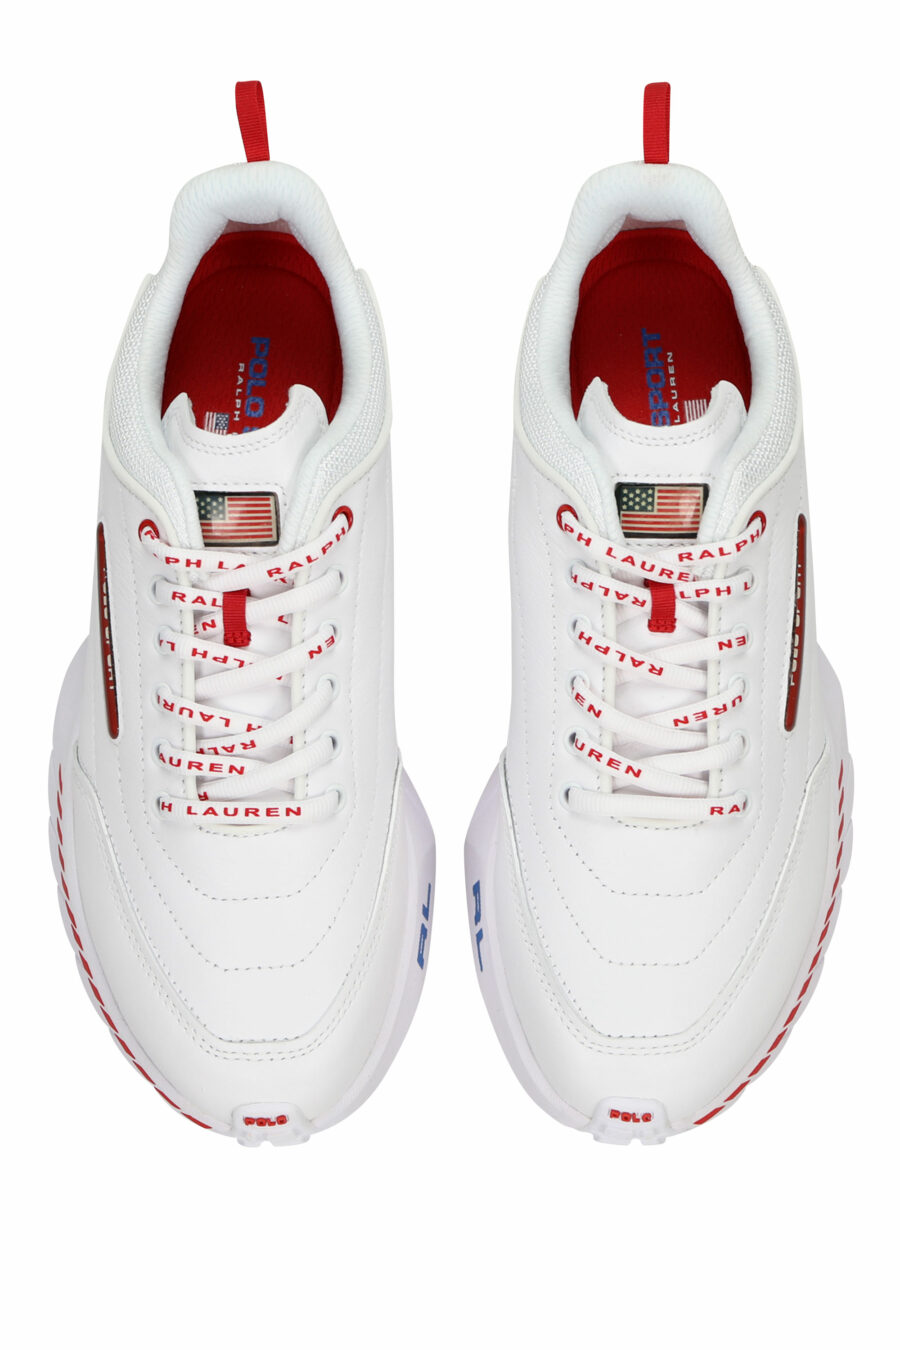 Zapatillas blancas con minilogo y detalles rojos - 3616535649279 4